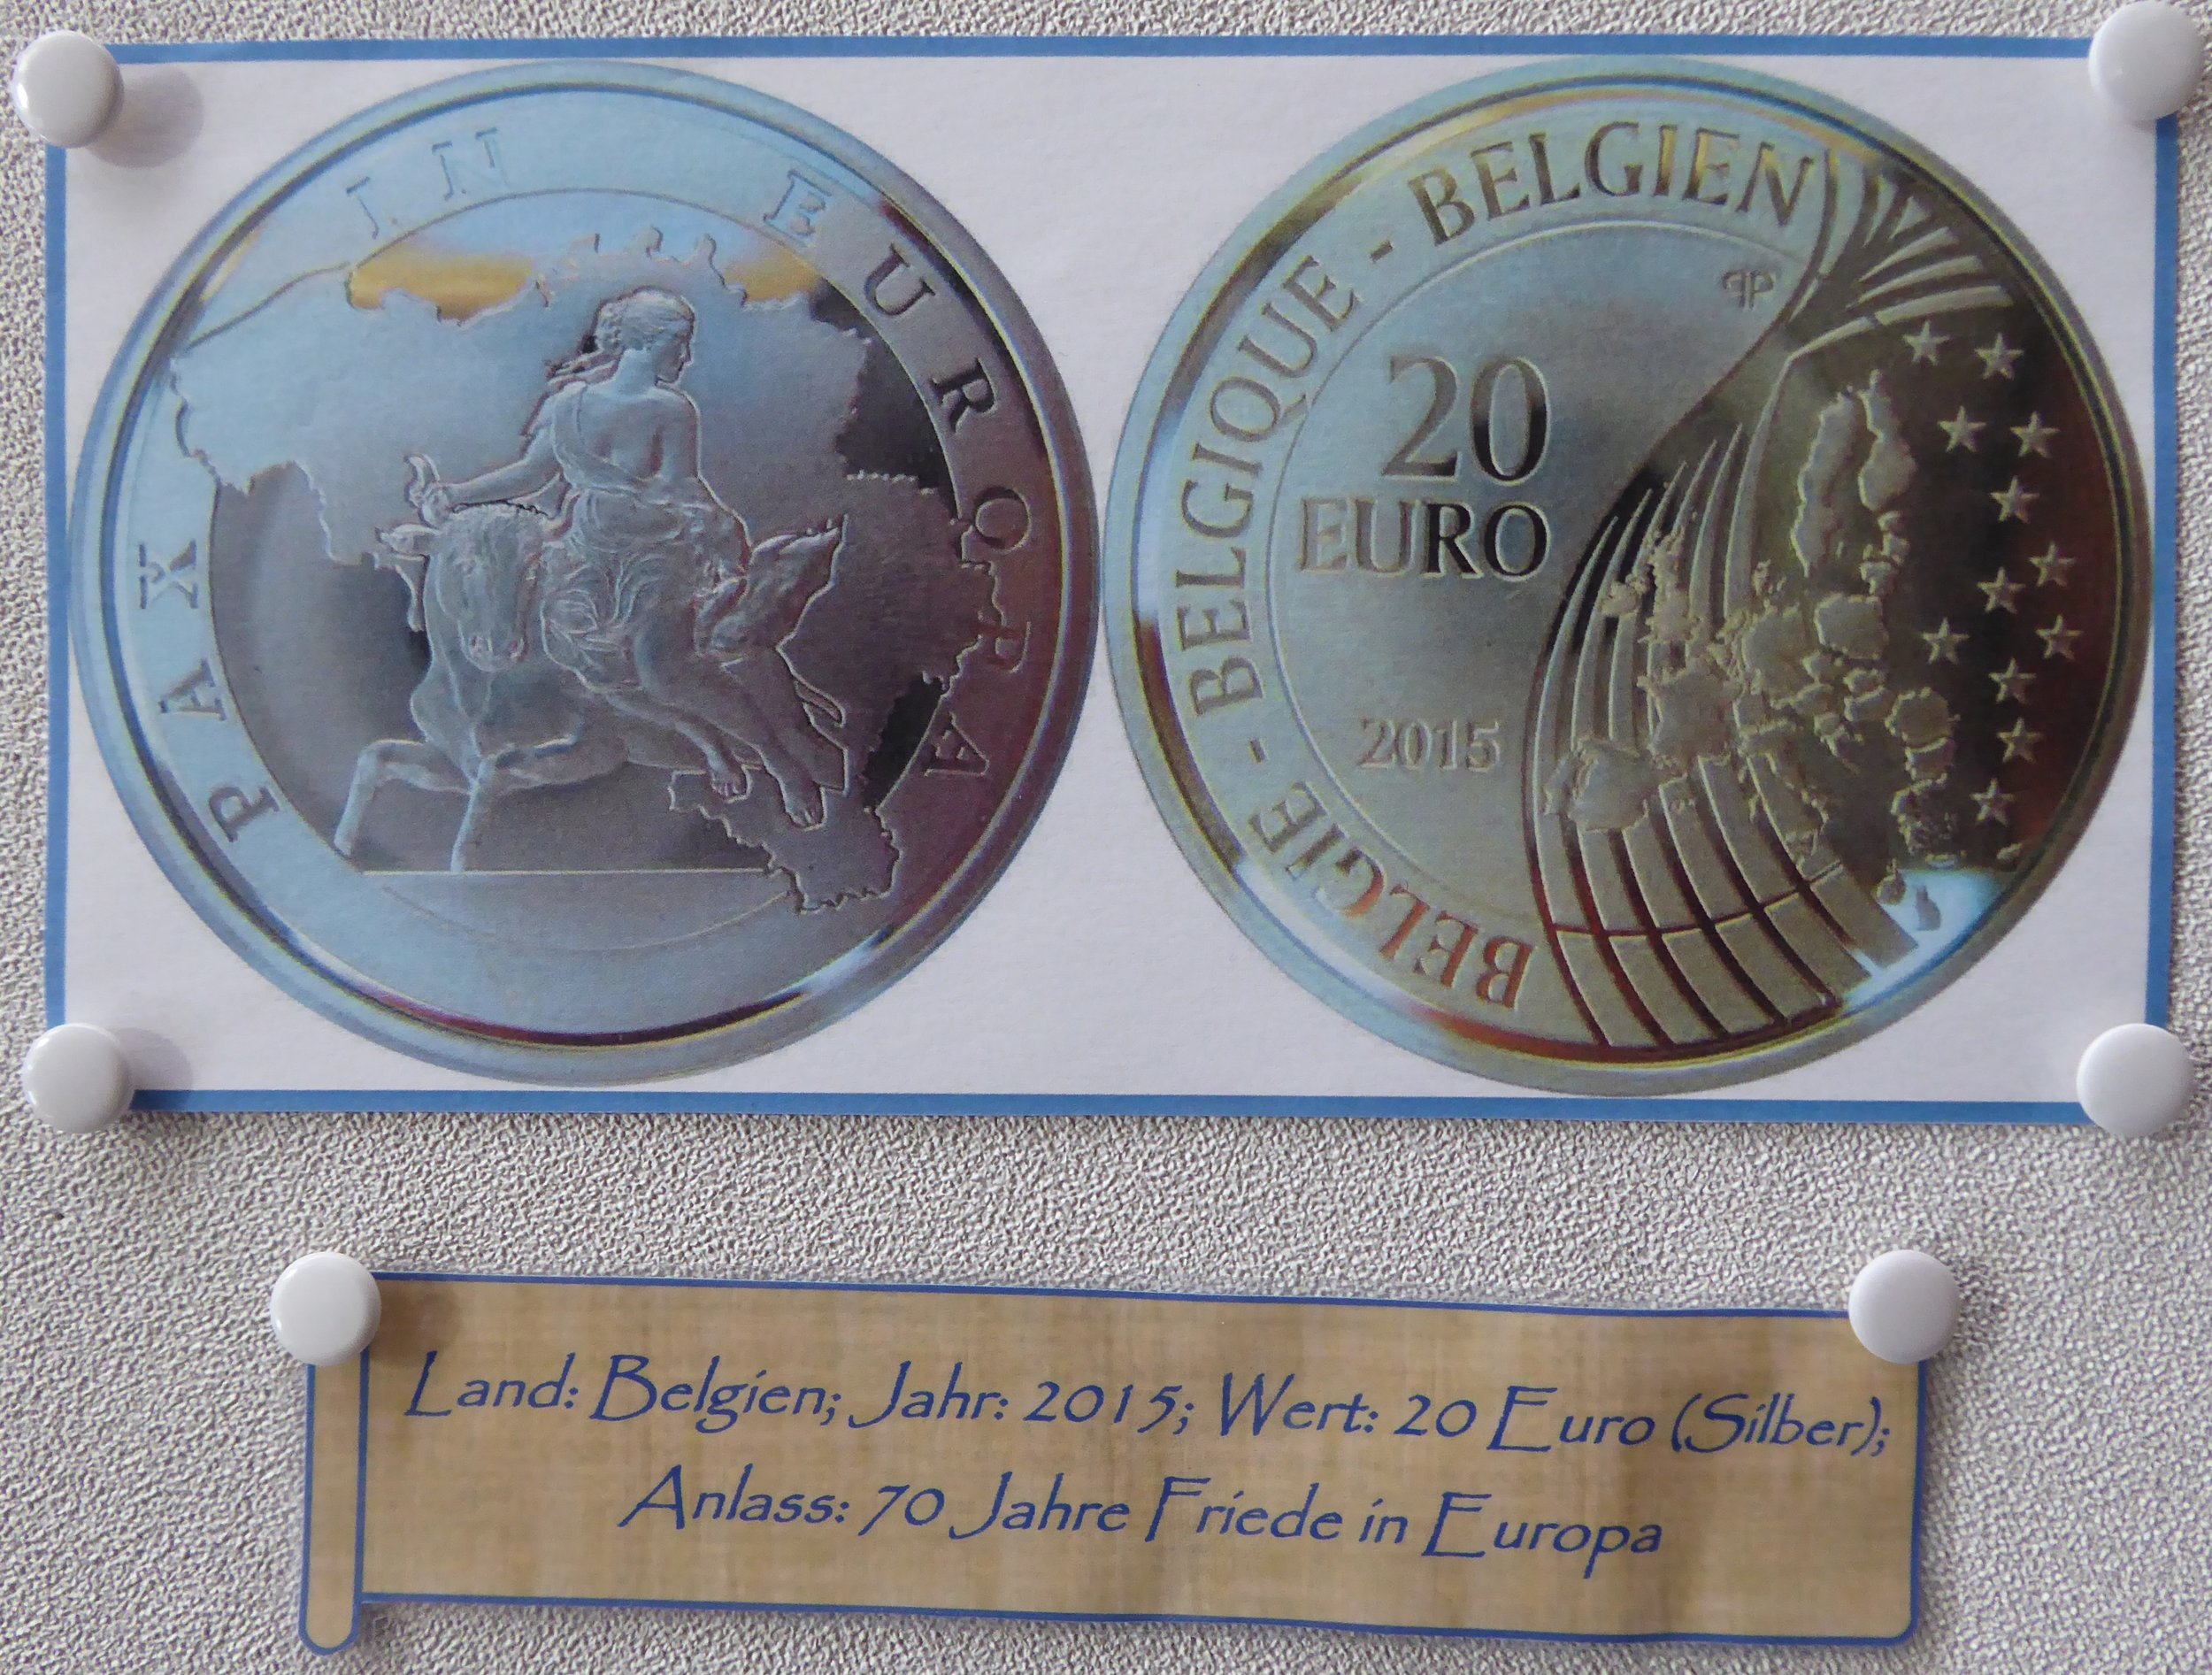 Europa - Münze 2.JPG